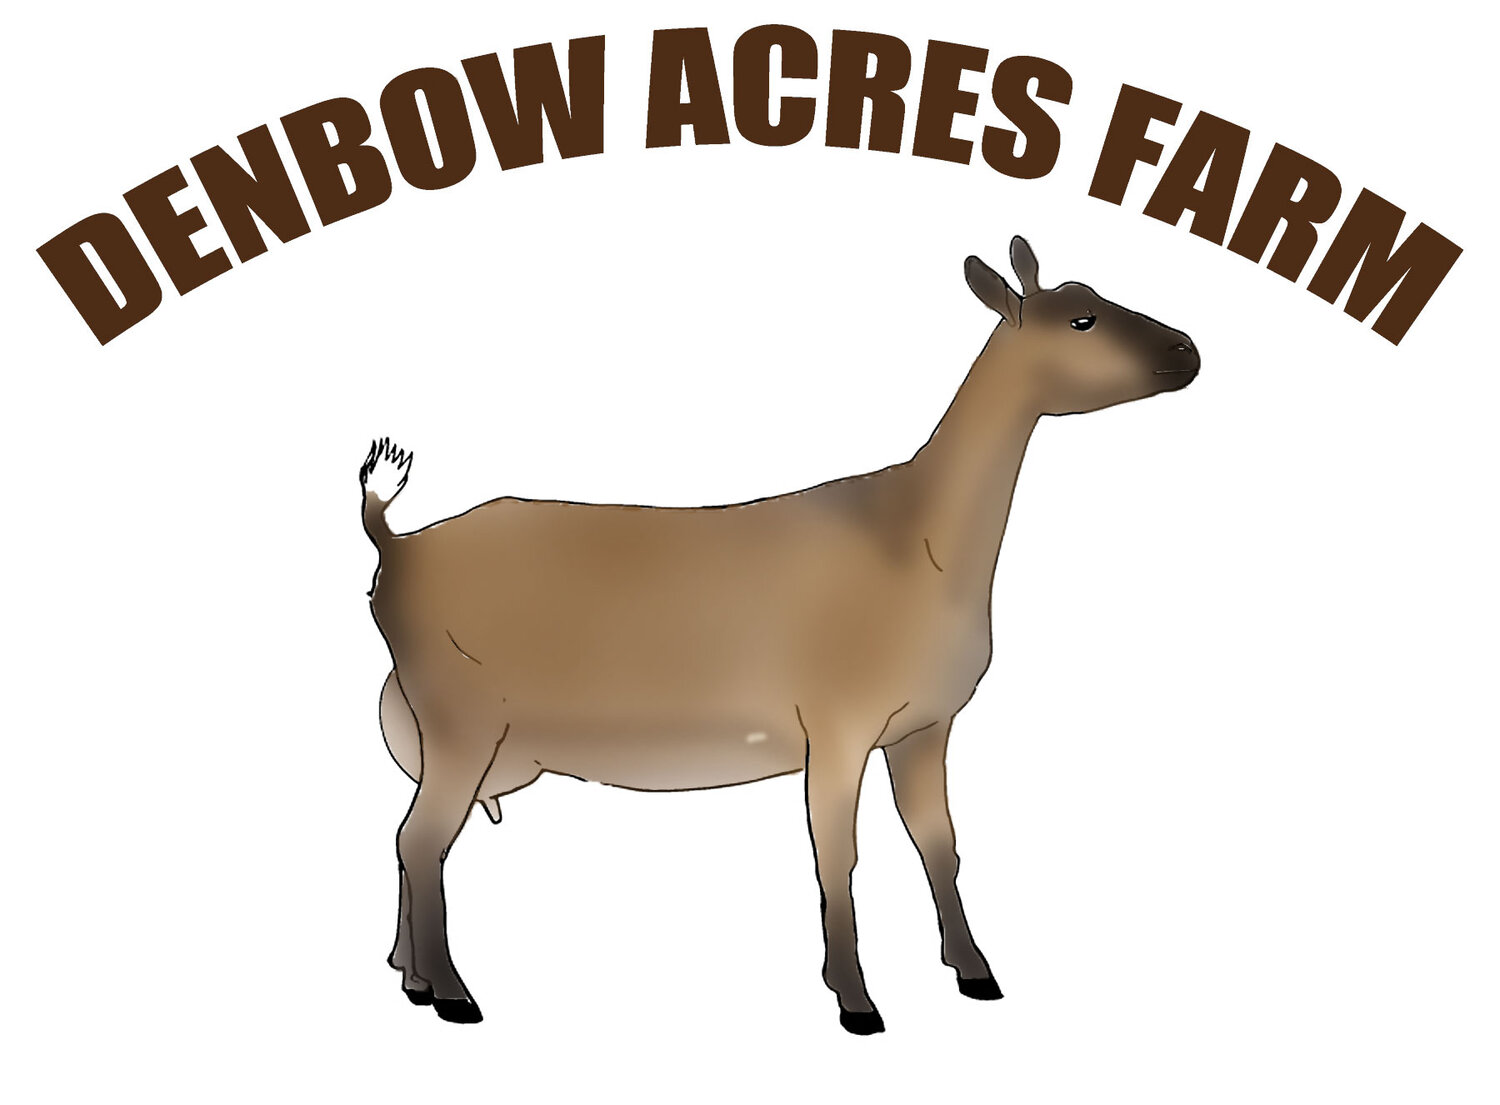 Denbow Acres Farm